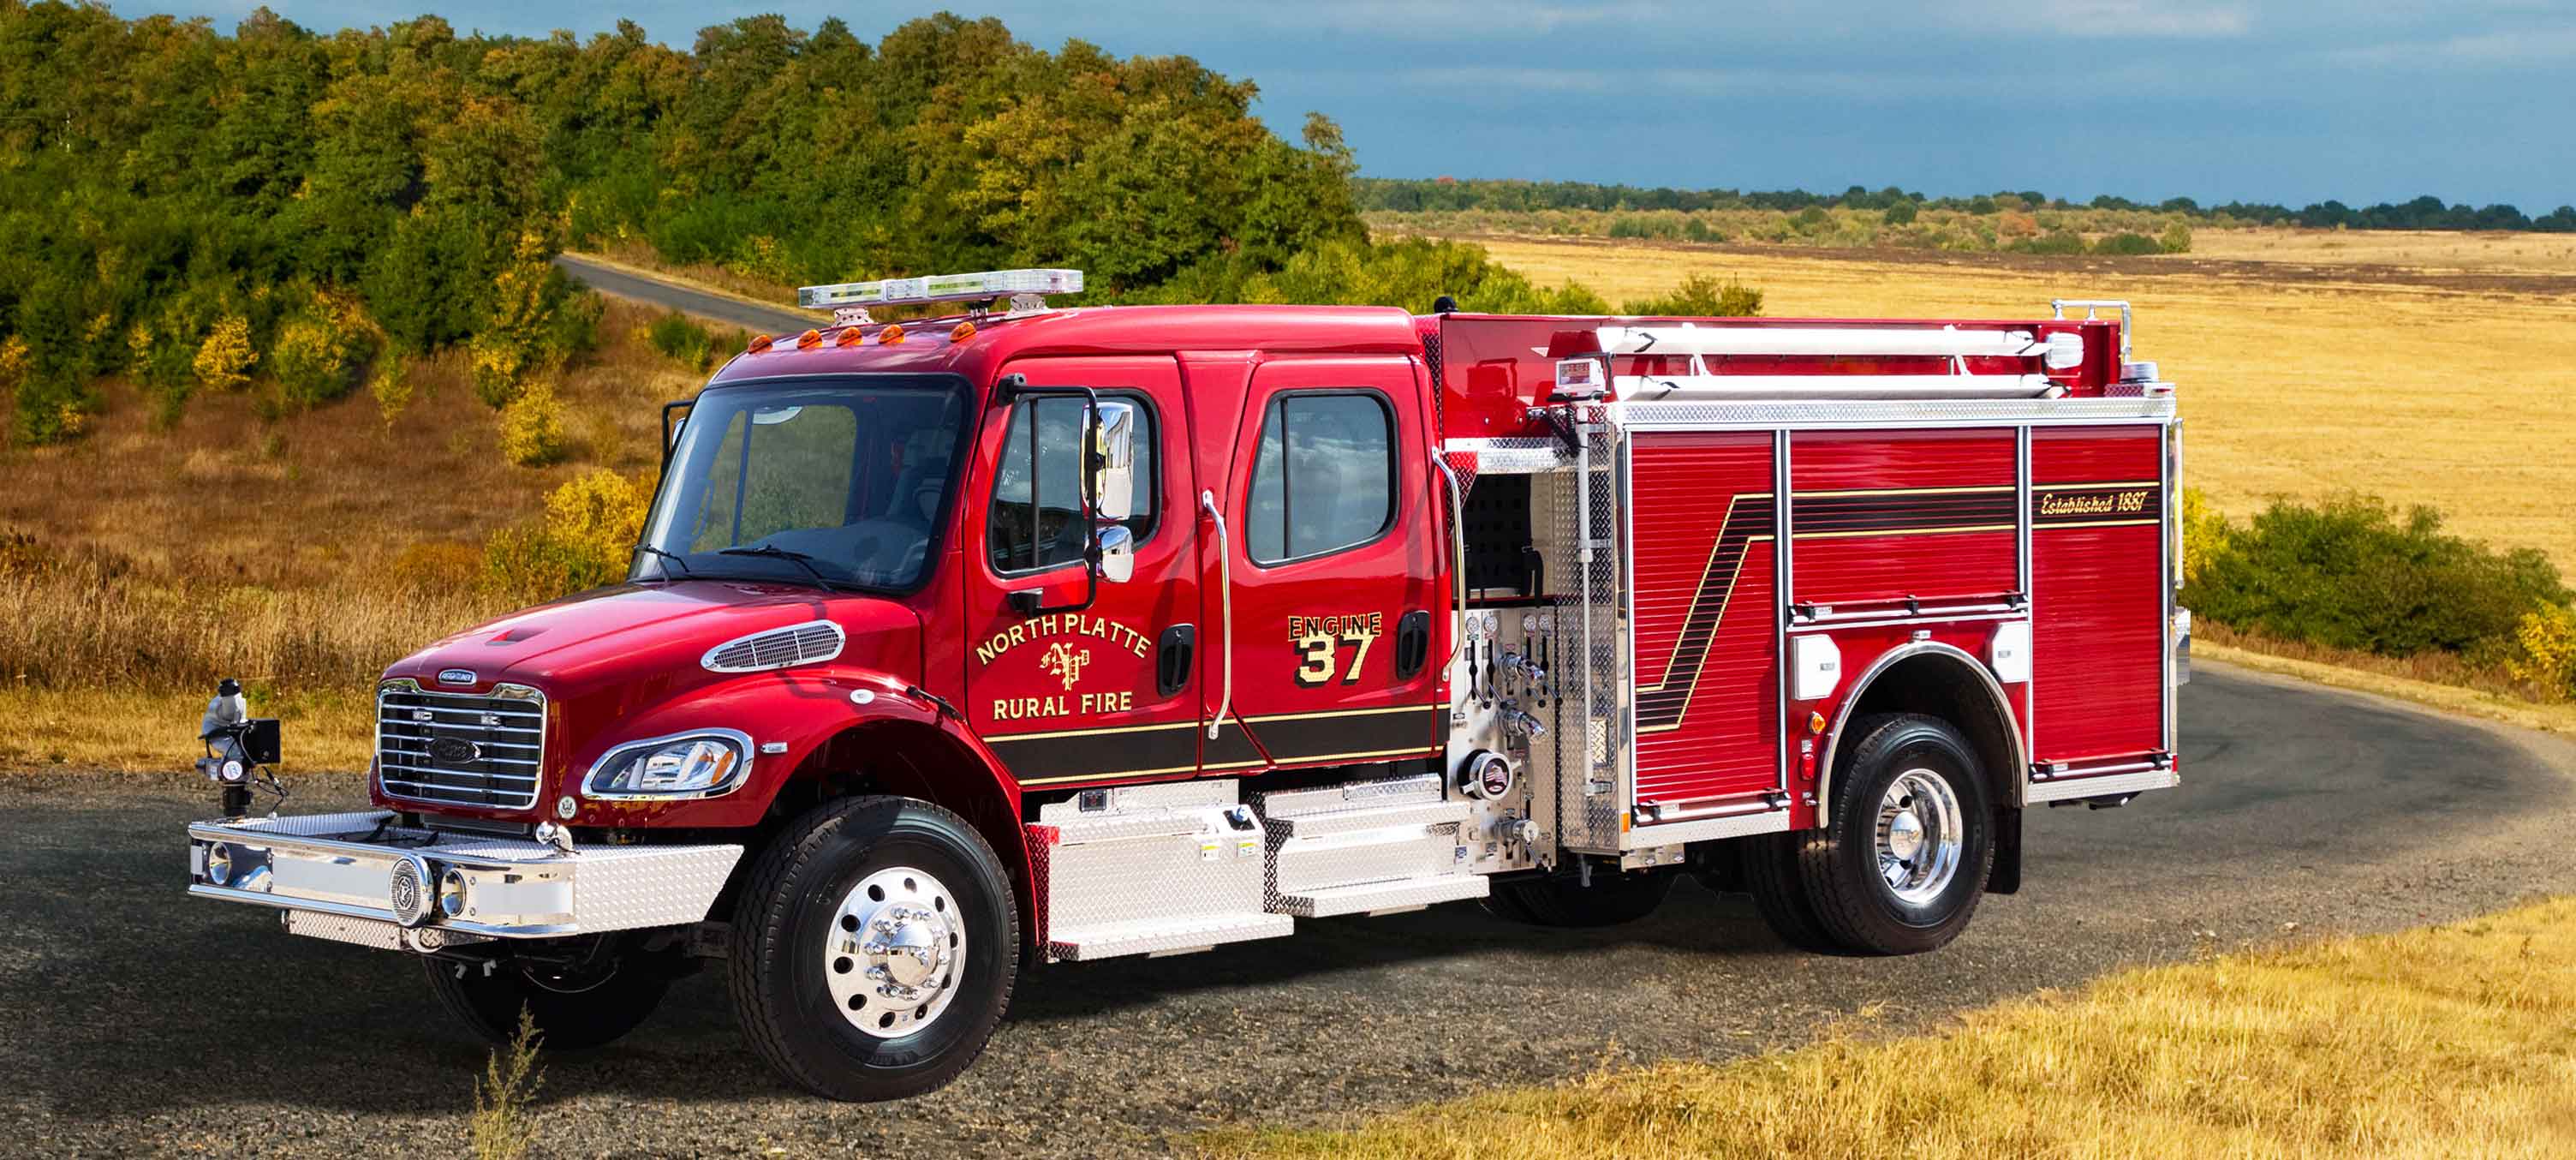 Responder Pumper Pierce Fire Truck